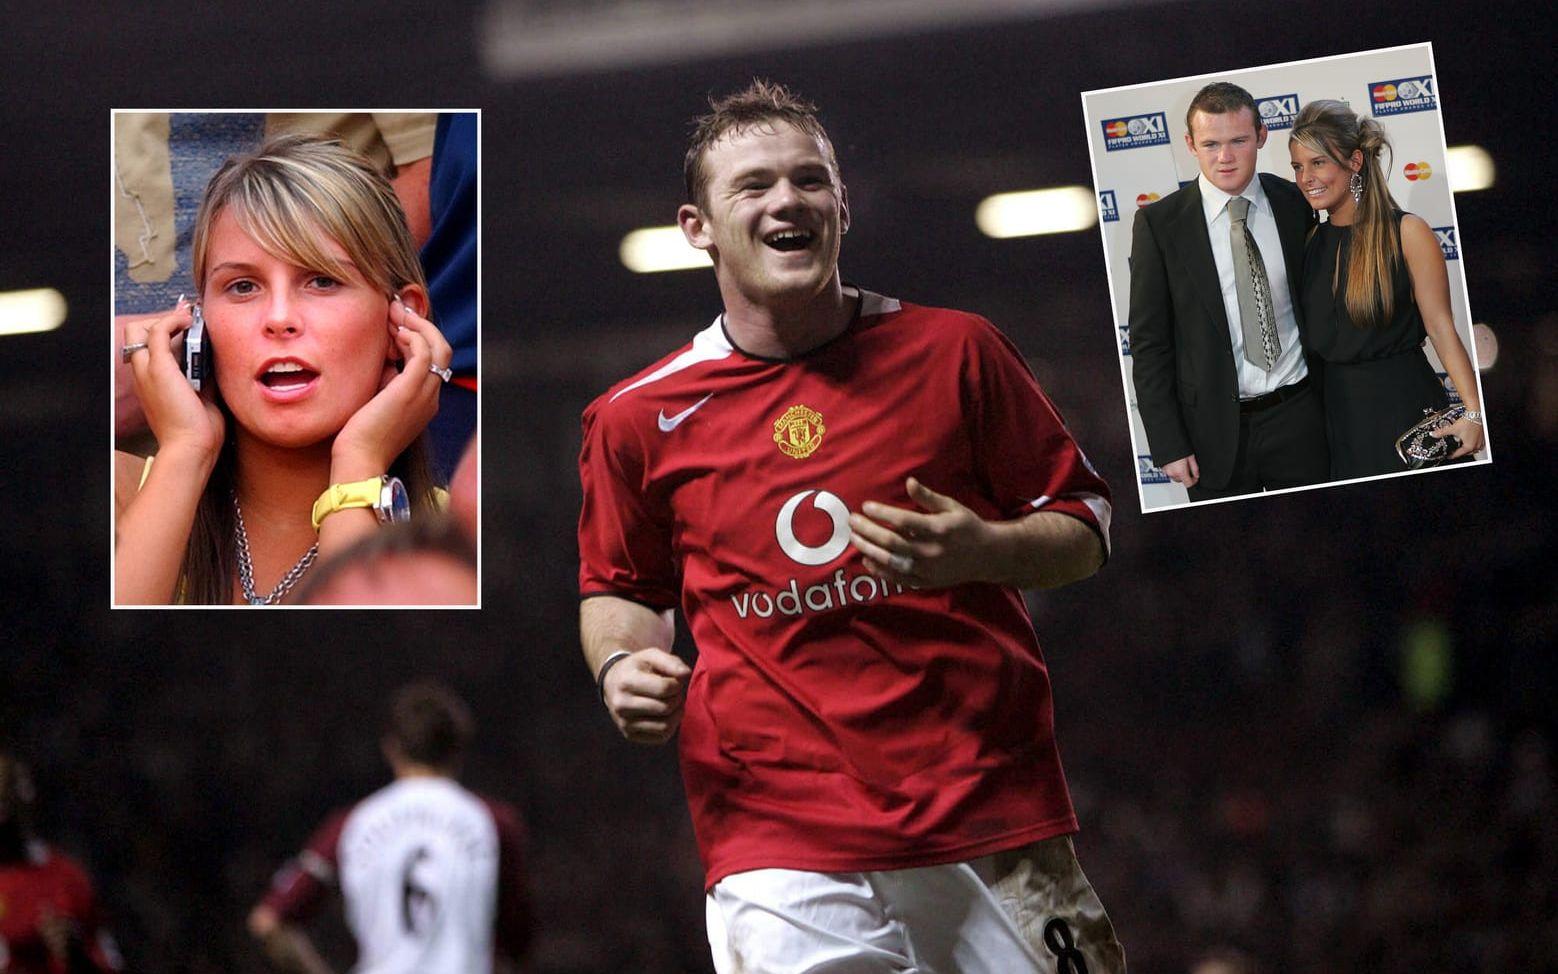 5. Först: Wayne Rooney slog igenom i Everton 2002 och gick sedan vidare till Manchester United 2004. Han var Englands stora framtidshopp och tillsammans med Coleen McLoughlin, som han träffade i skolan i Liverpool och blev tillsammans med 2002, när han var 17 år. Foto: TT